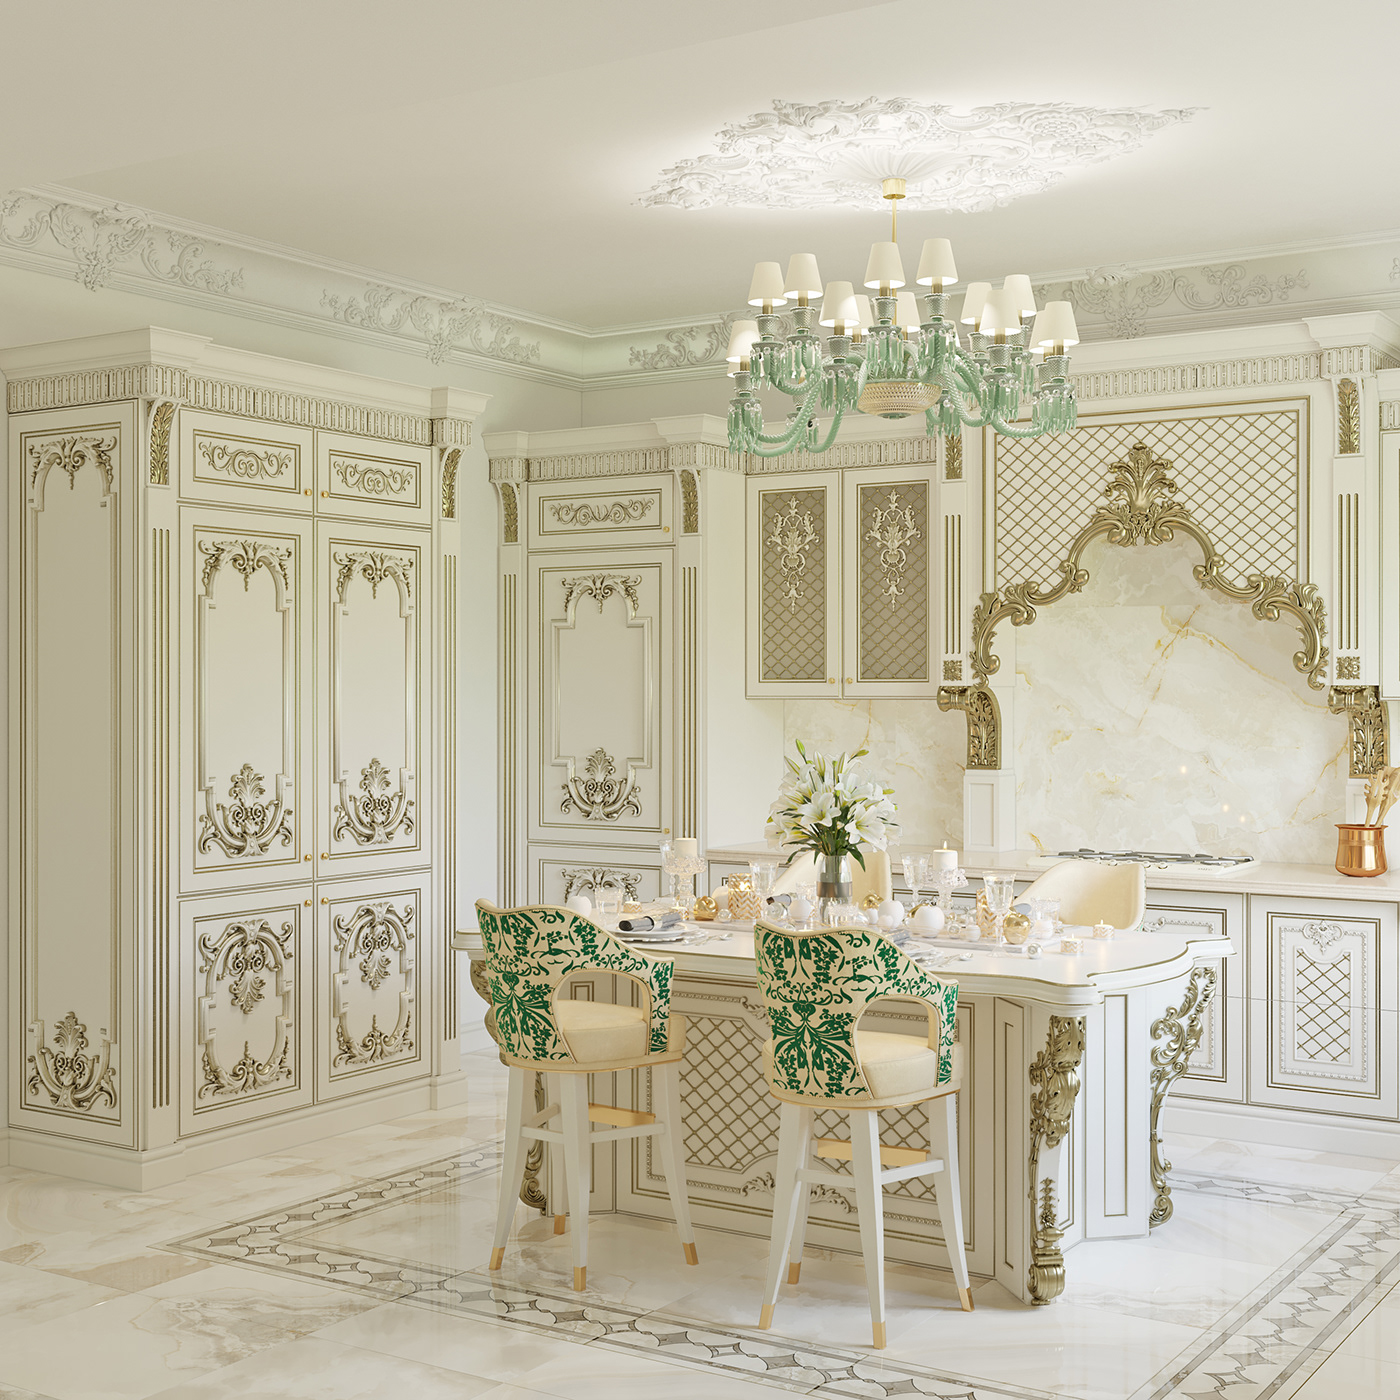 классическая кухня визуализация классическая luxurykitchen classic kithen